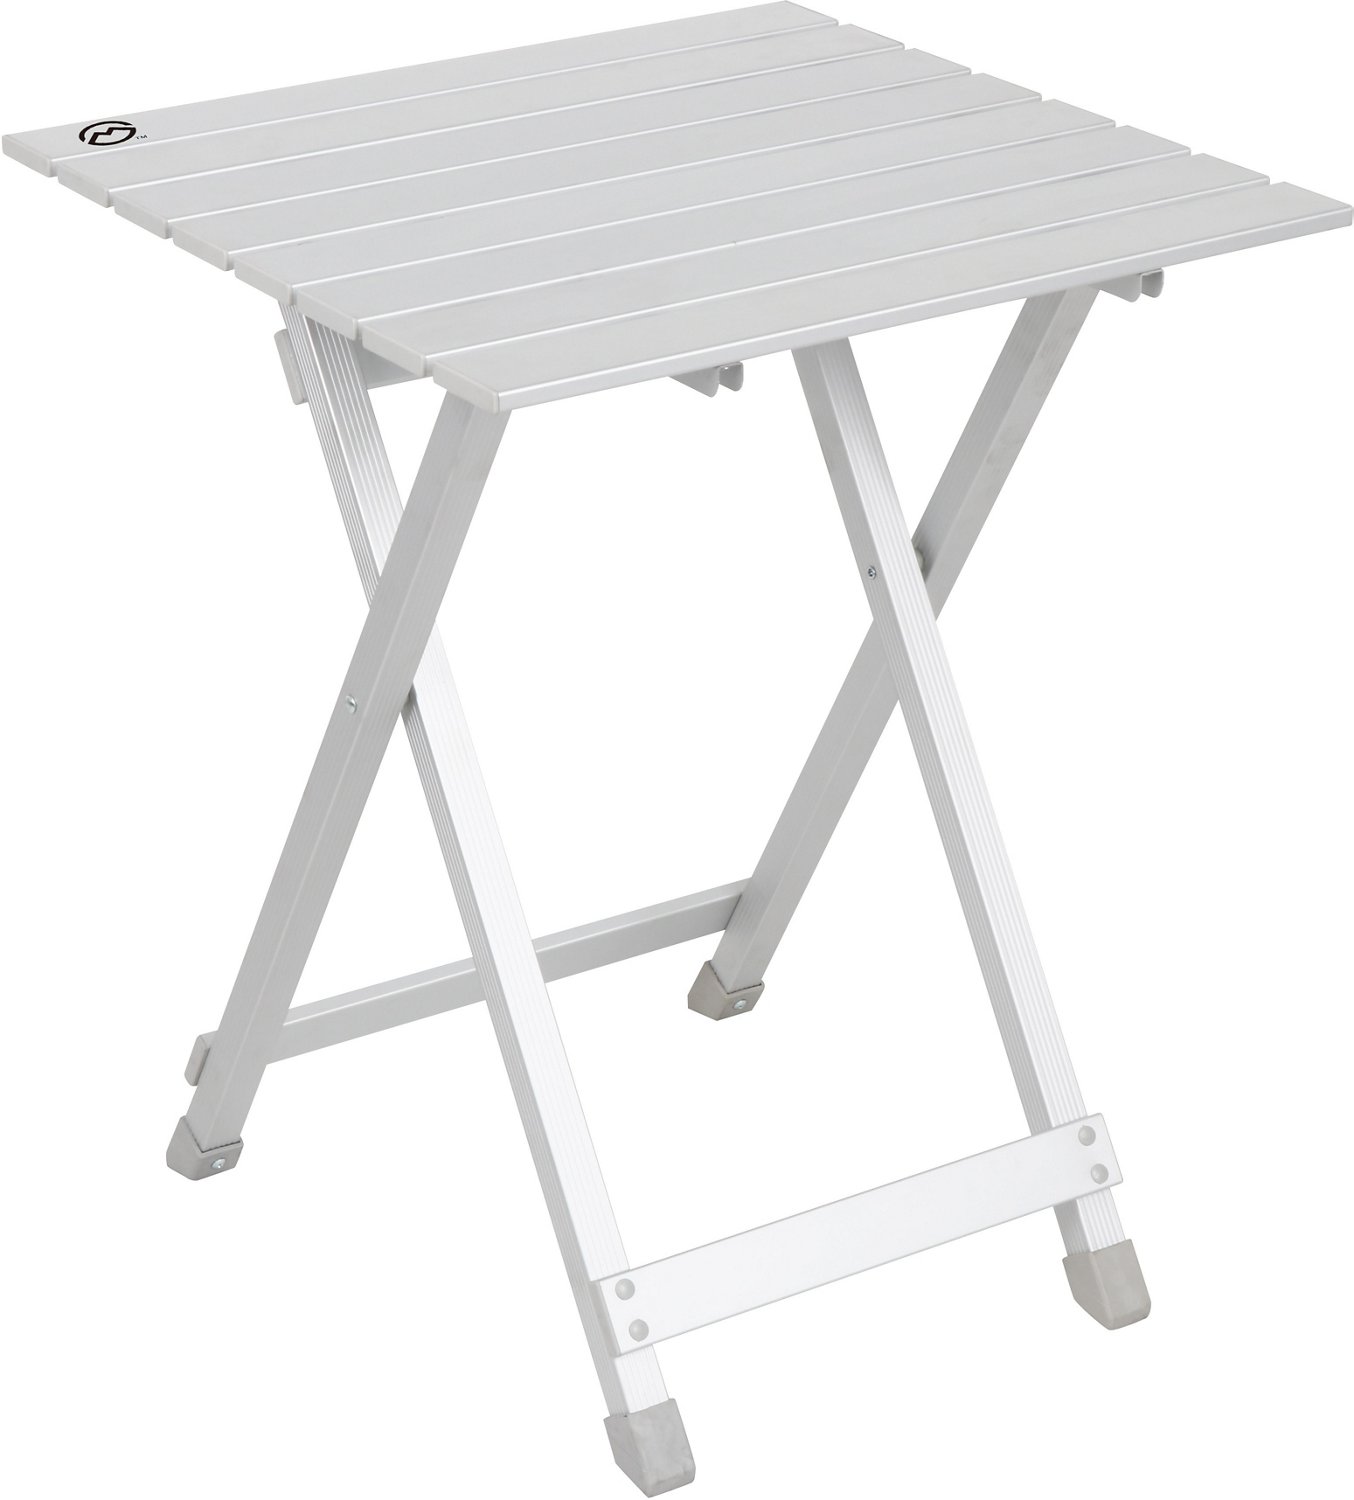 Aluminium folding table 